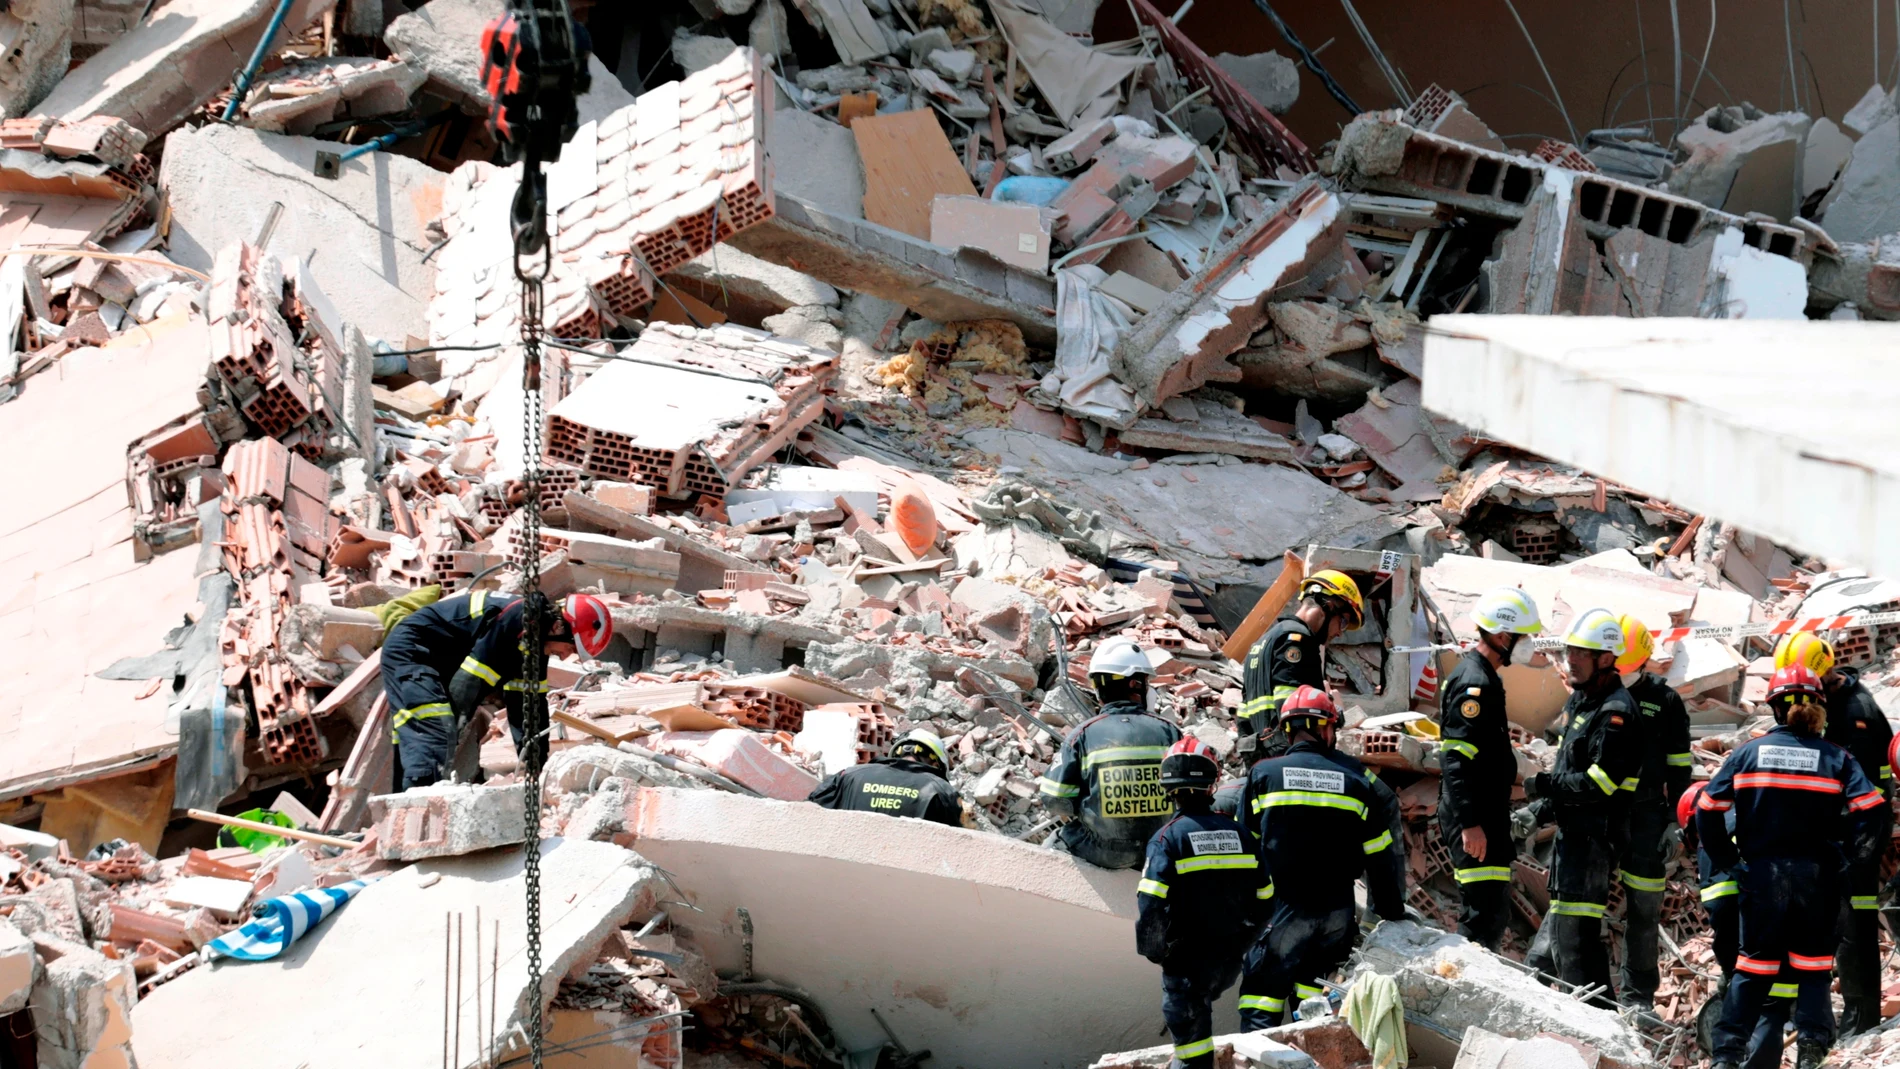 El edificio de tres plantas que se ha derrumbado en una urbanización de Peñíscola (Castellón) tenía 30 años de antigüedad y colapsó "bastante rápido", como si fuera "un dominó".